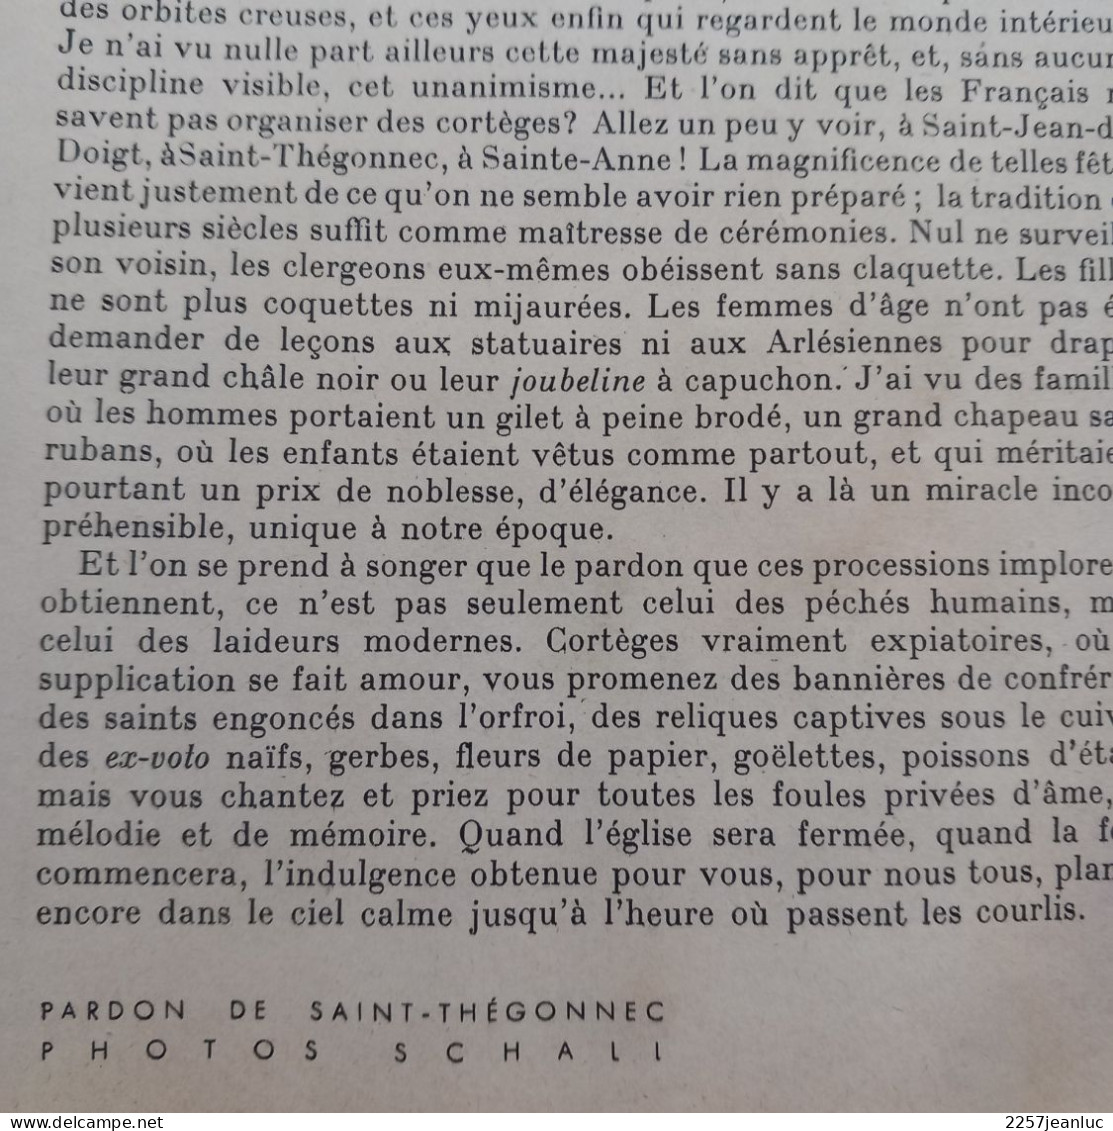 La Revue du Médecin du 30 Septembre 1936 Reportages divers exemple Pardons de Bretagne.ect..